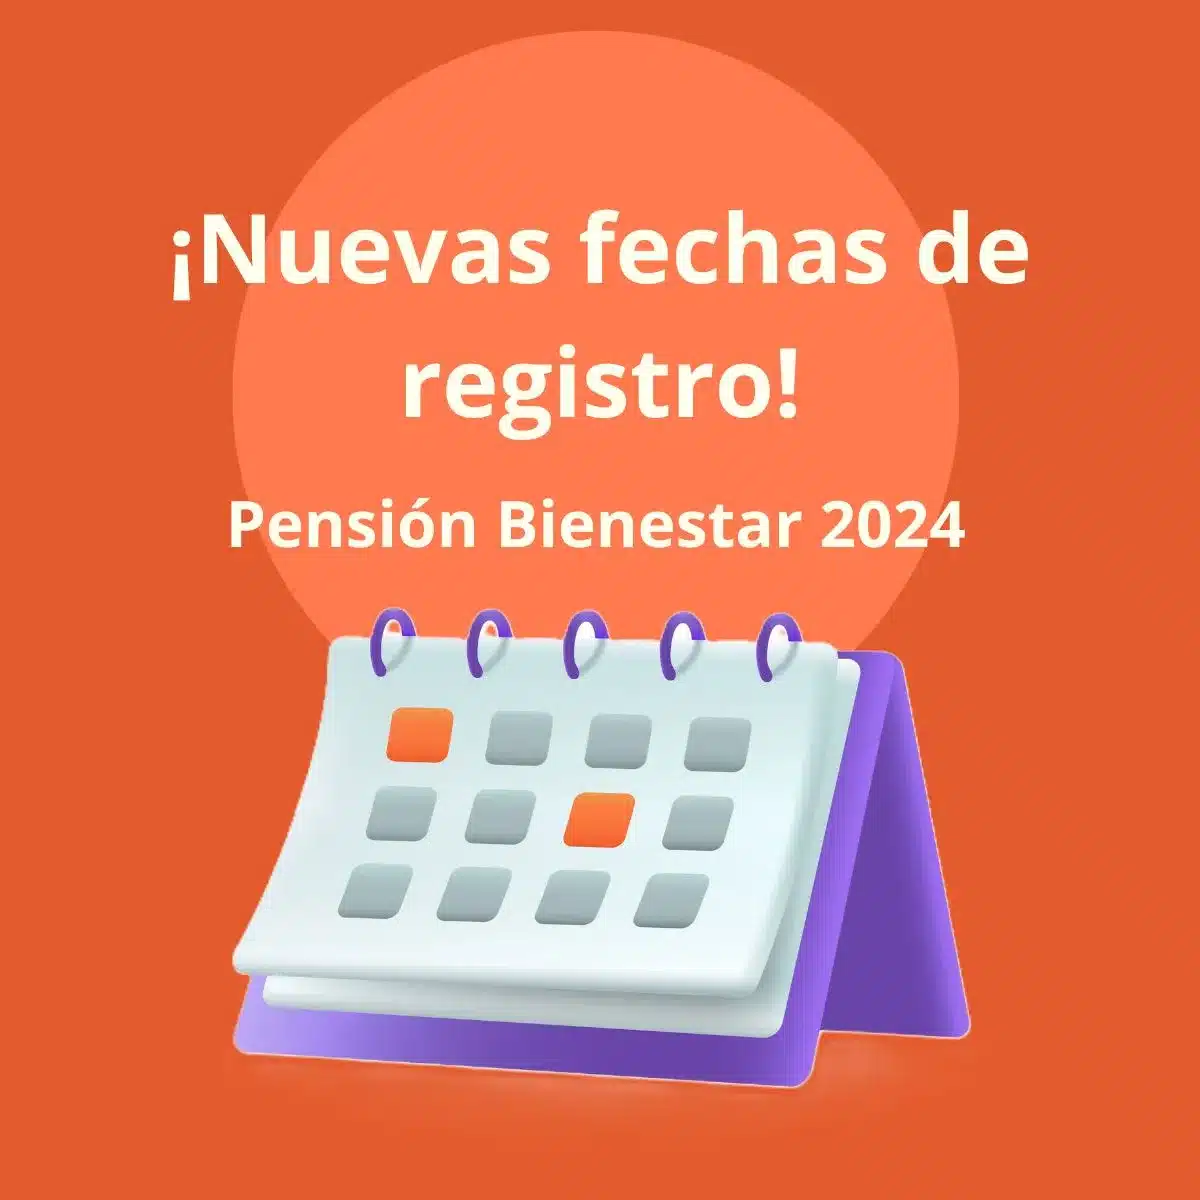 Otra oportunidad para realizar tu Registro a la Pensión del Bienestar 2024. Entérate aquí de las fechas y requisitos que necesitaras.